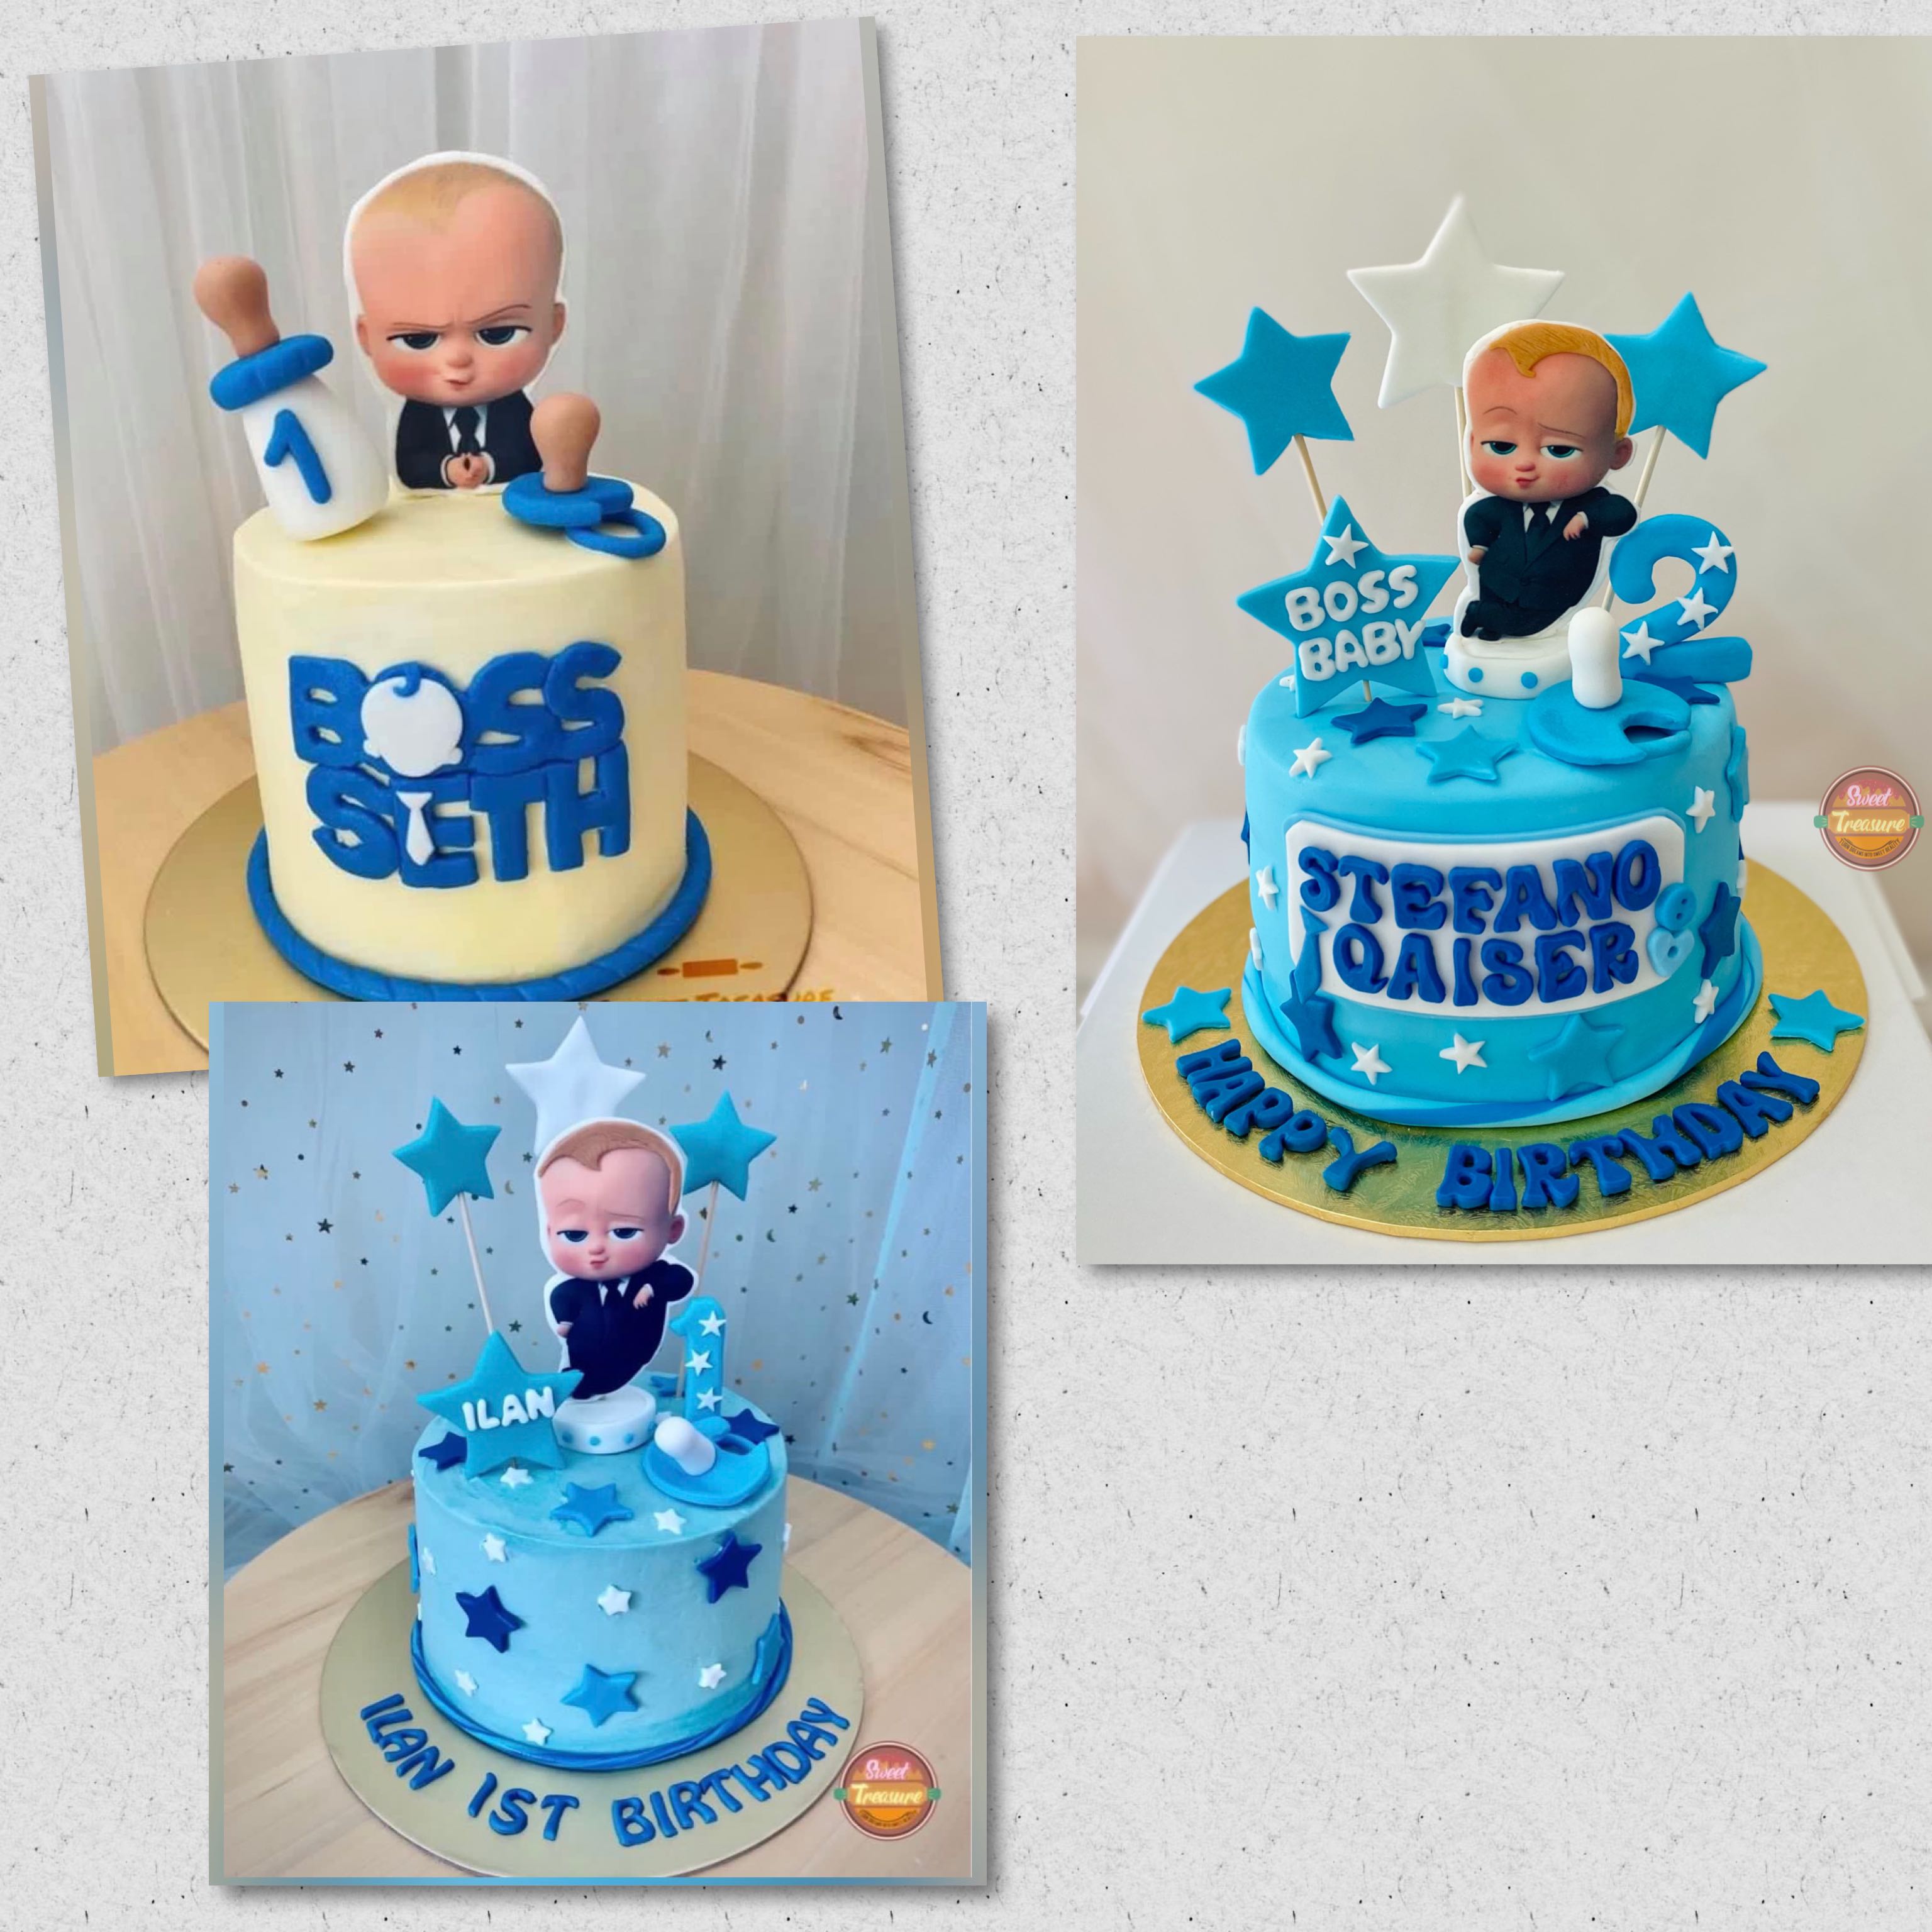 Boss baby cake 4